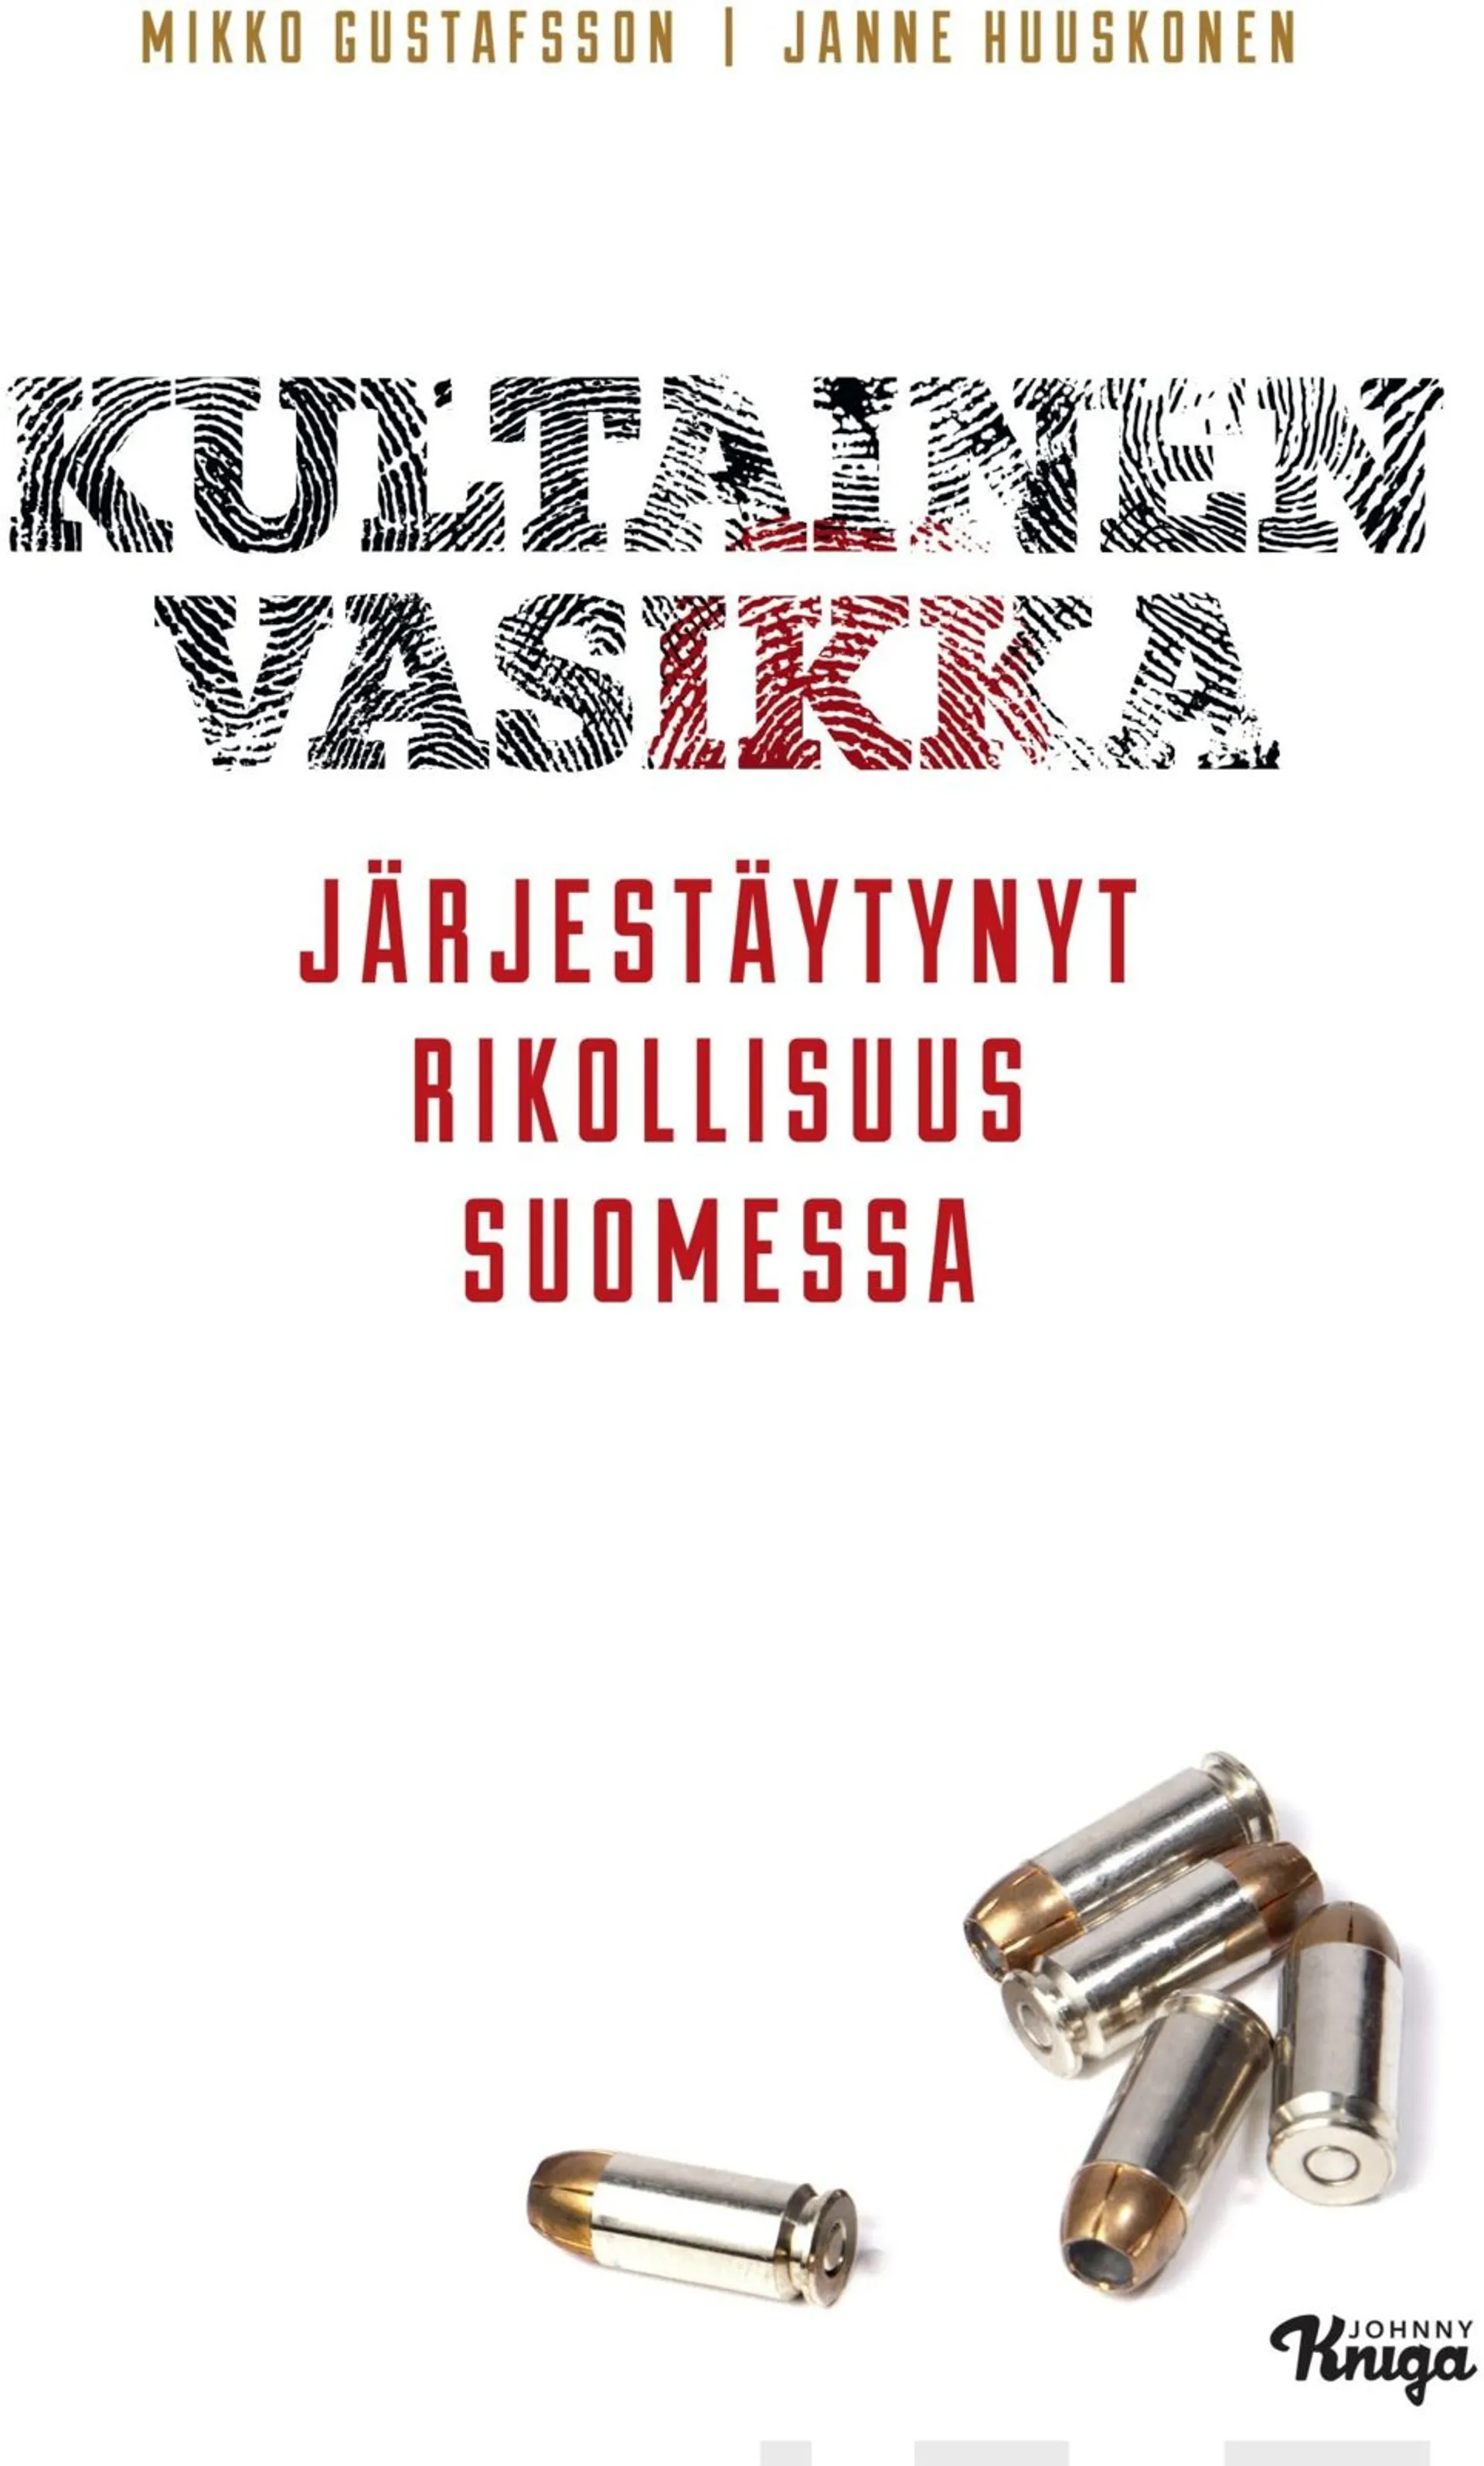 Gustafsson, Kultainen vasikka - Järjestäytynyt rikollisuus Suomessa